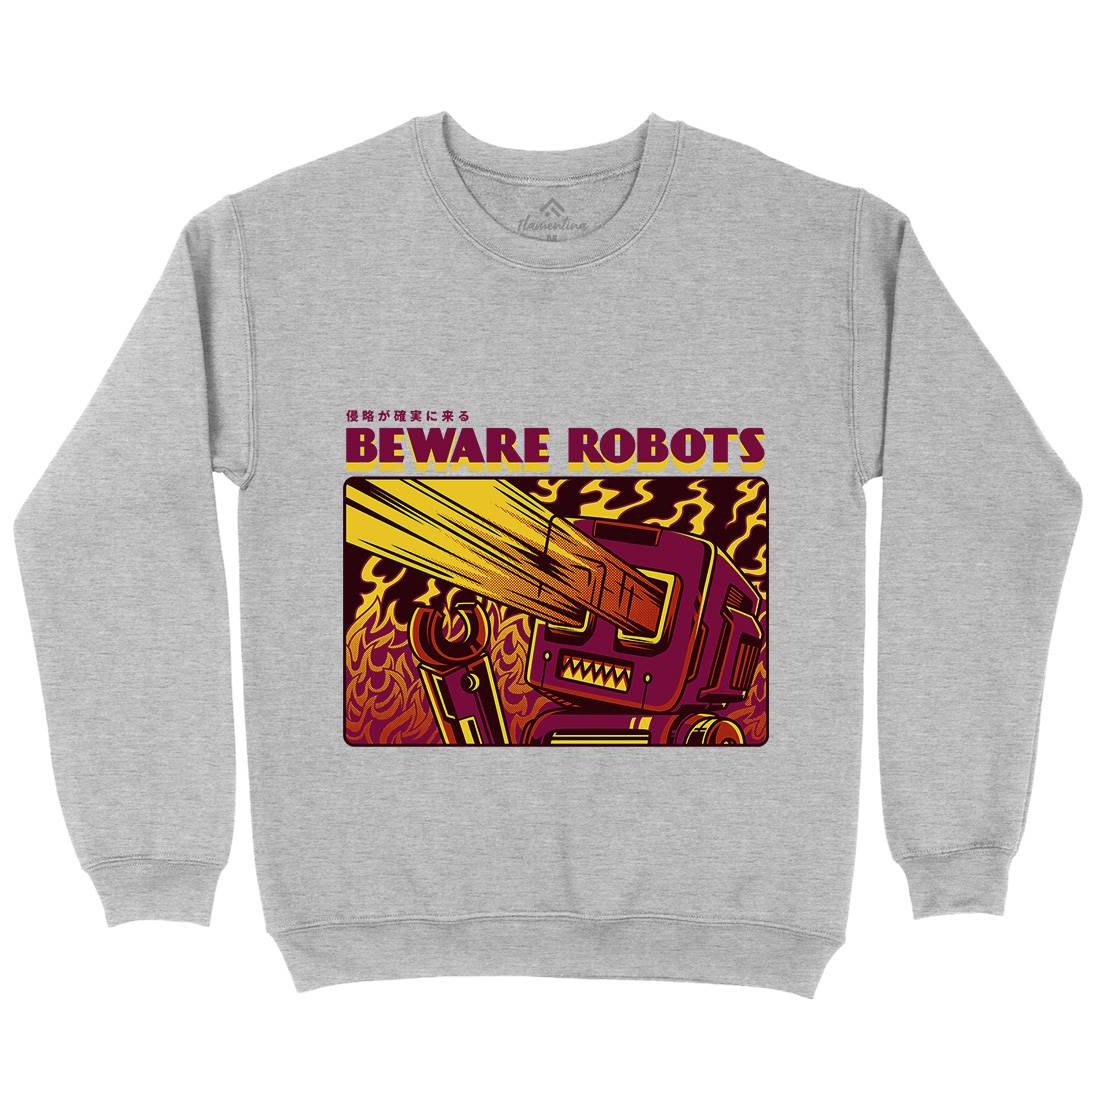 Beware Robots Kids Crew Neck Sweatshirt Space D714